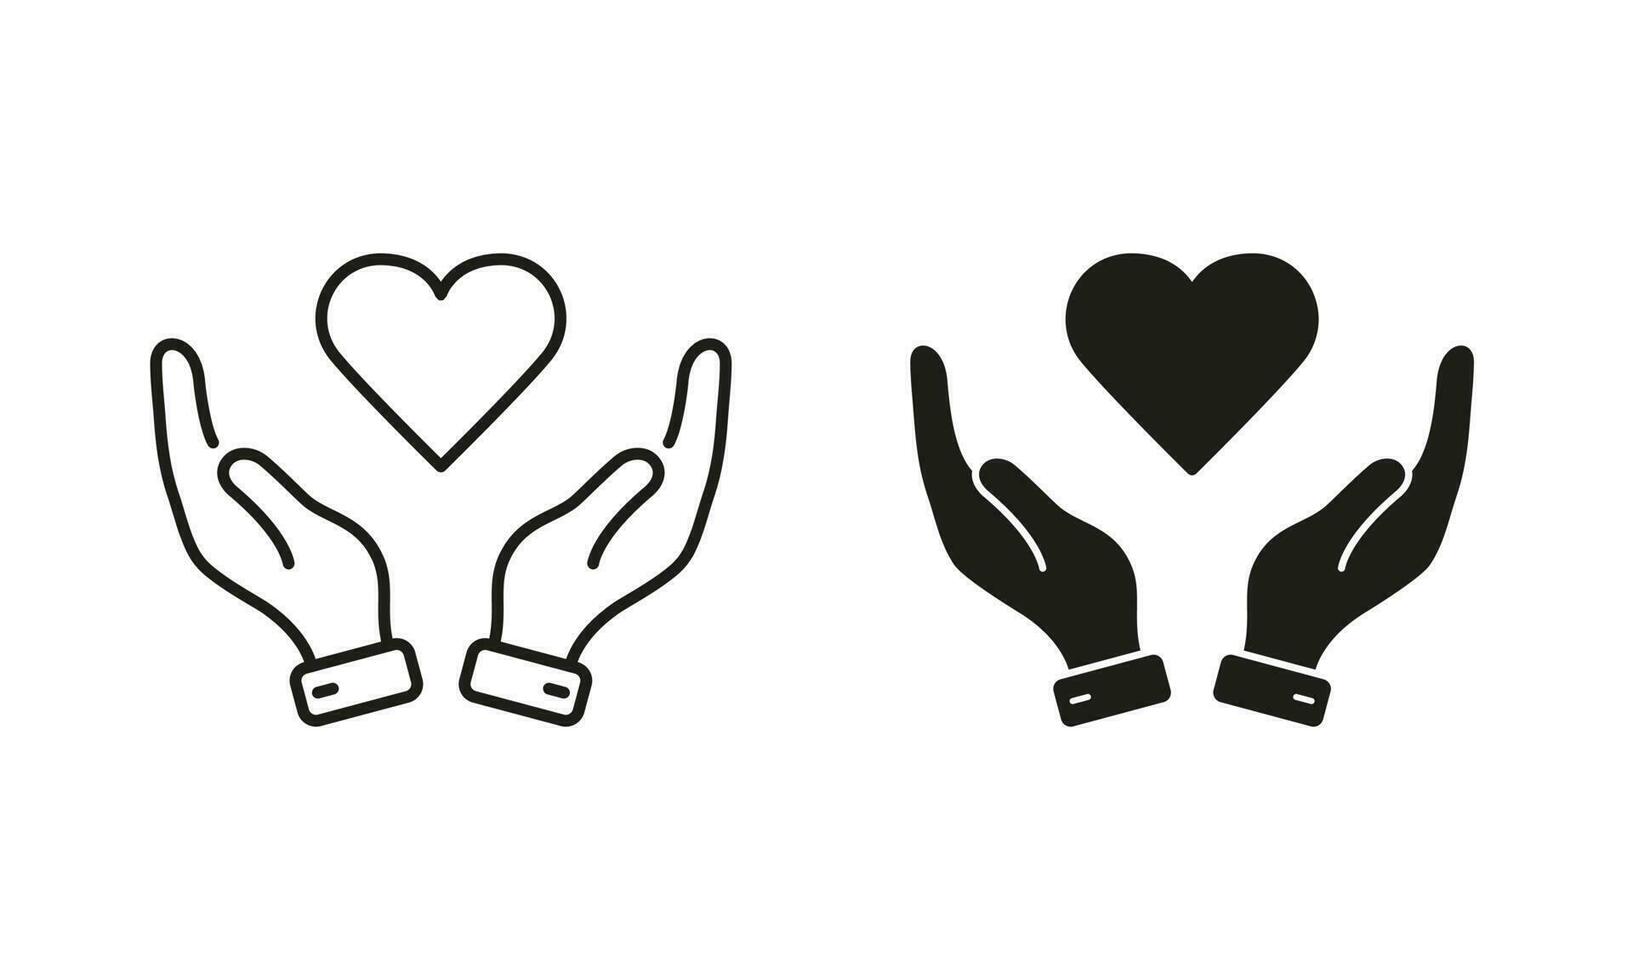 paz amistad, emocional apoyo símbolo recopilación. amar, salud, caridad, cuidado, ayuda línea y silueta icono colocar. humano mano y corazón forma pictograma. aislado vector ilustración.